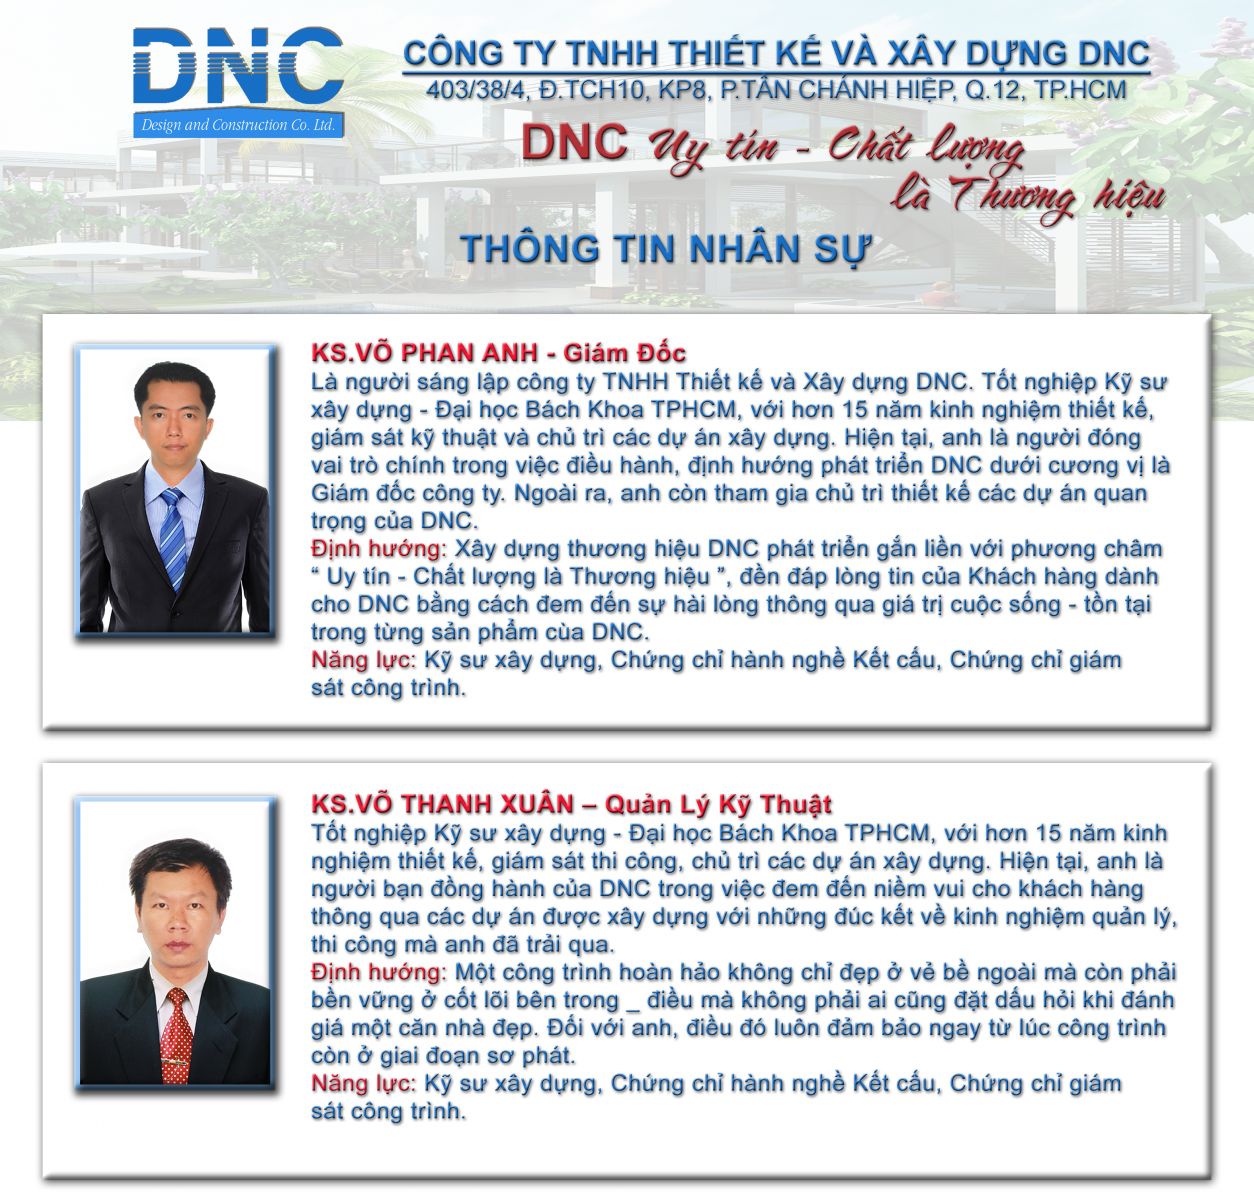 Giới thiệu về công ty TNHH Thiết Kế Và Xây Dựng DNC